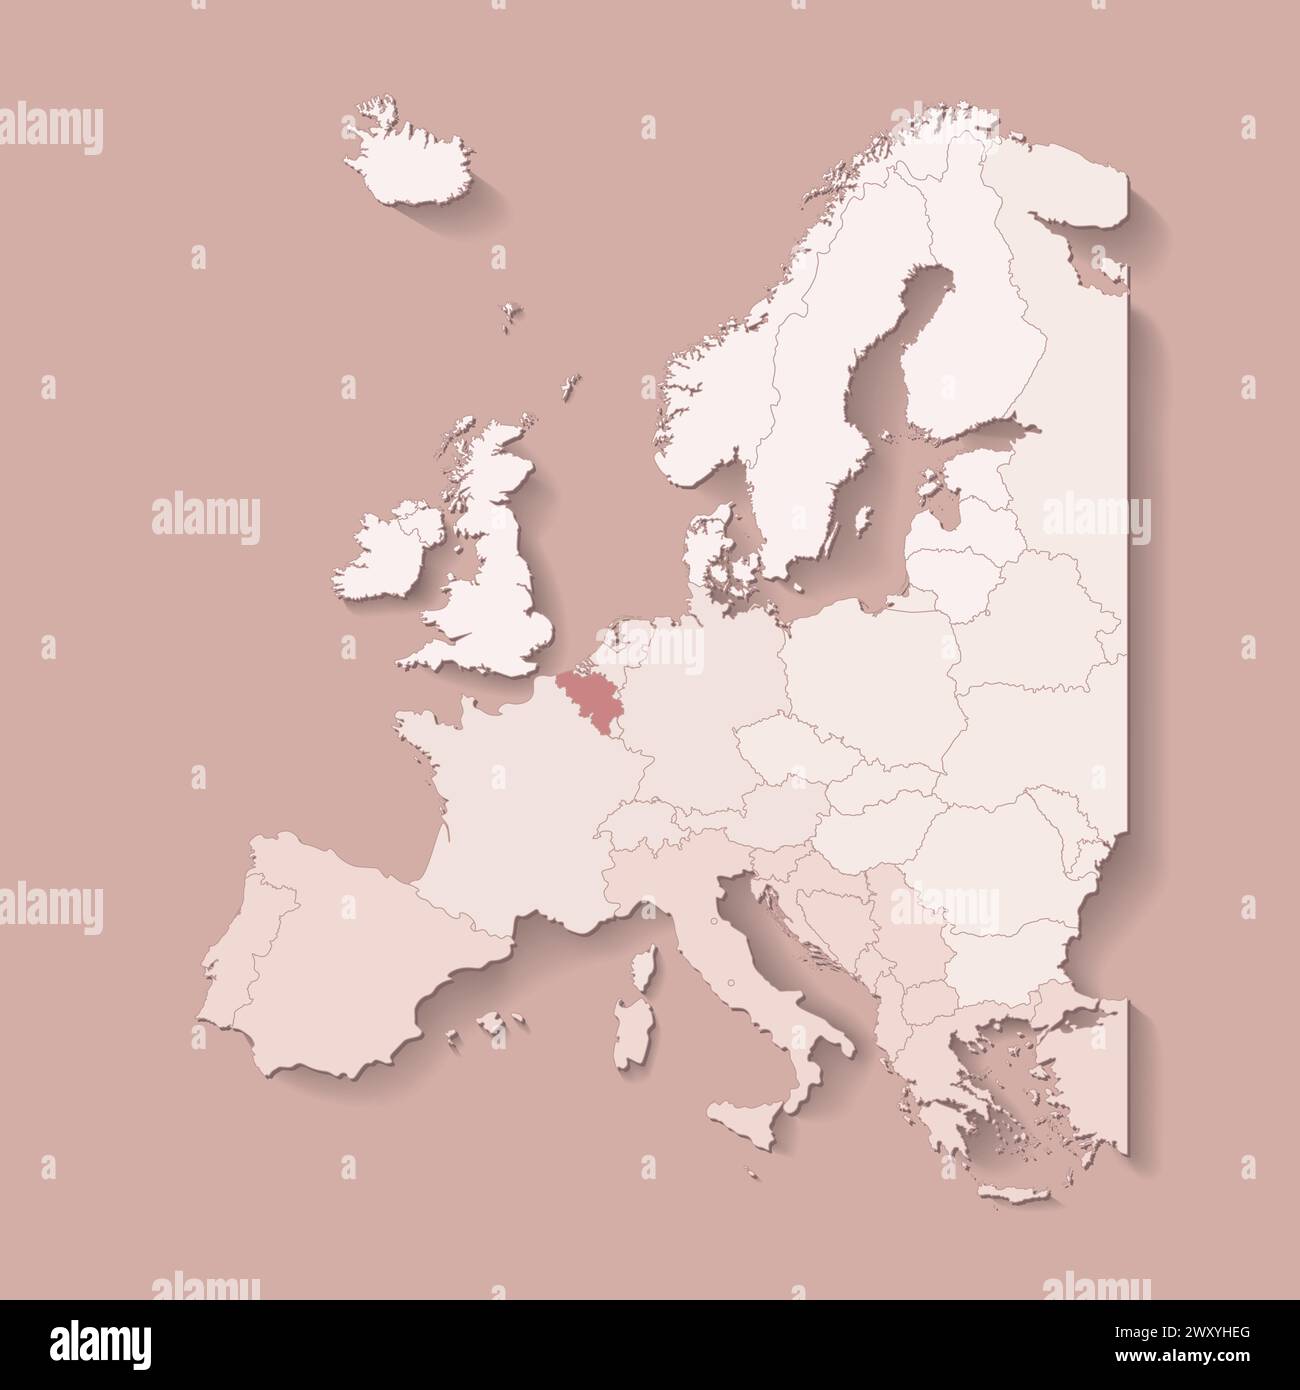 Illustrazione vettoriale con terra europea con confini di stati e paese contrassegnato Belgio. Mappa politica di colore marrone con occidentale, sud e così via Illustrazione Vettoriale